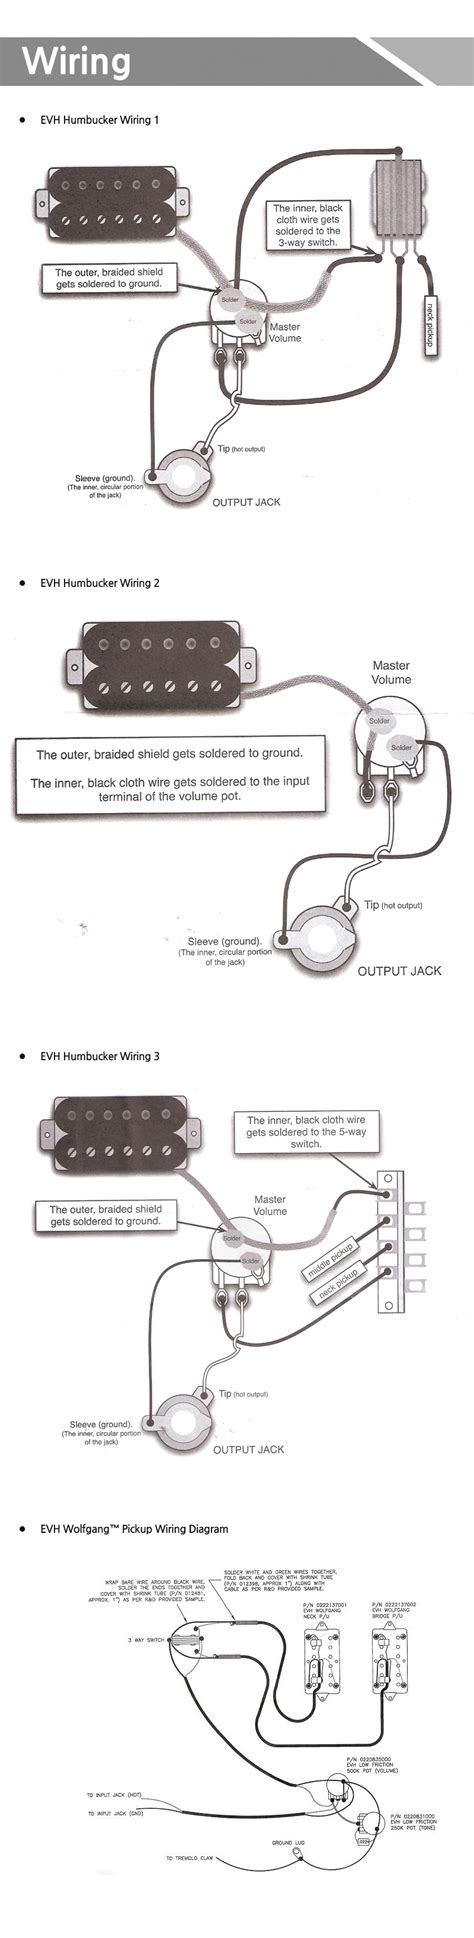 evh pickup wiring diagram